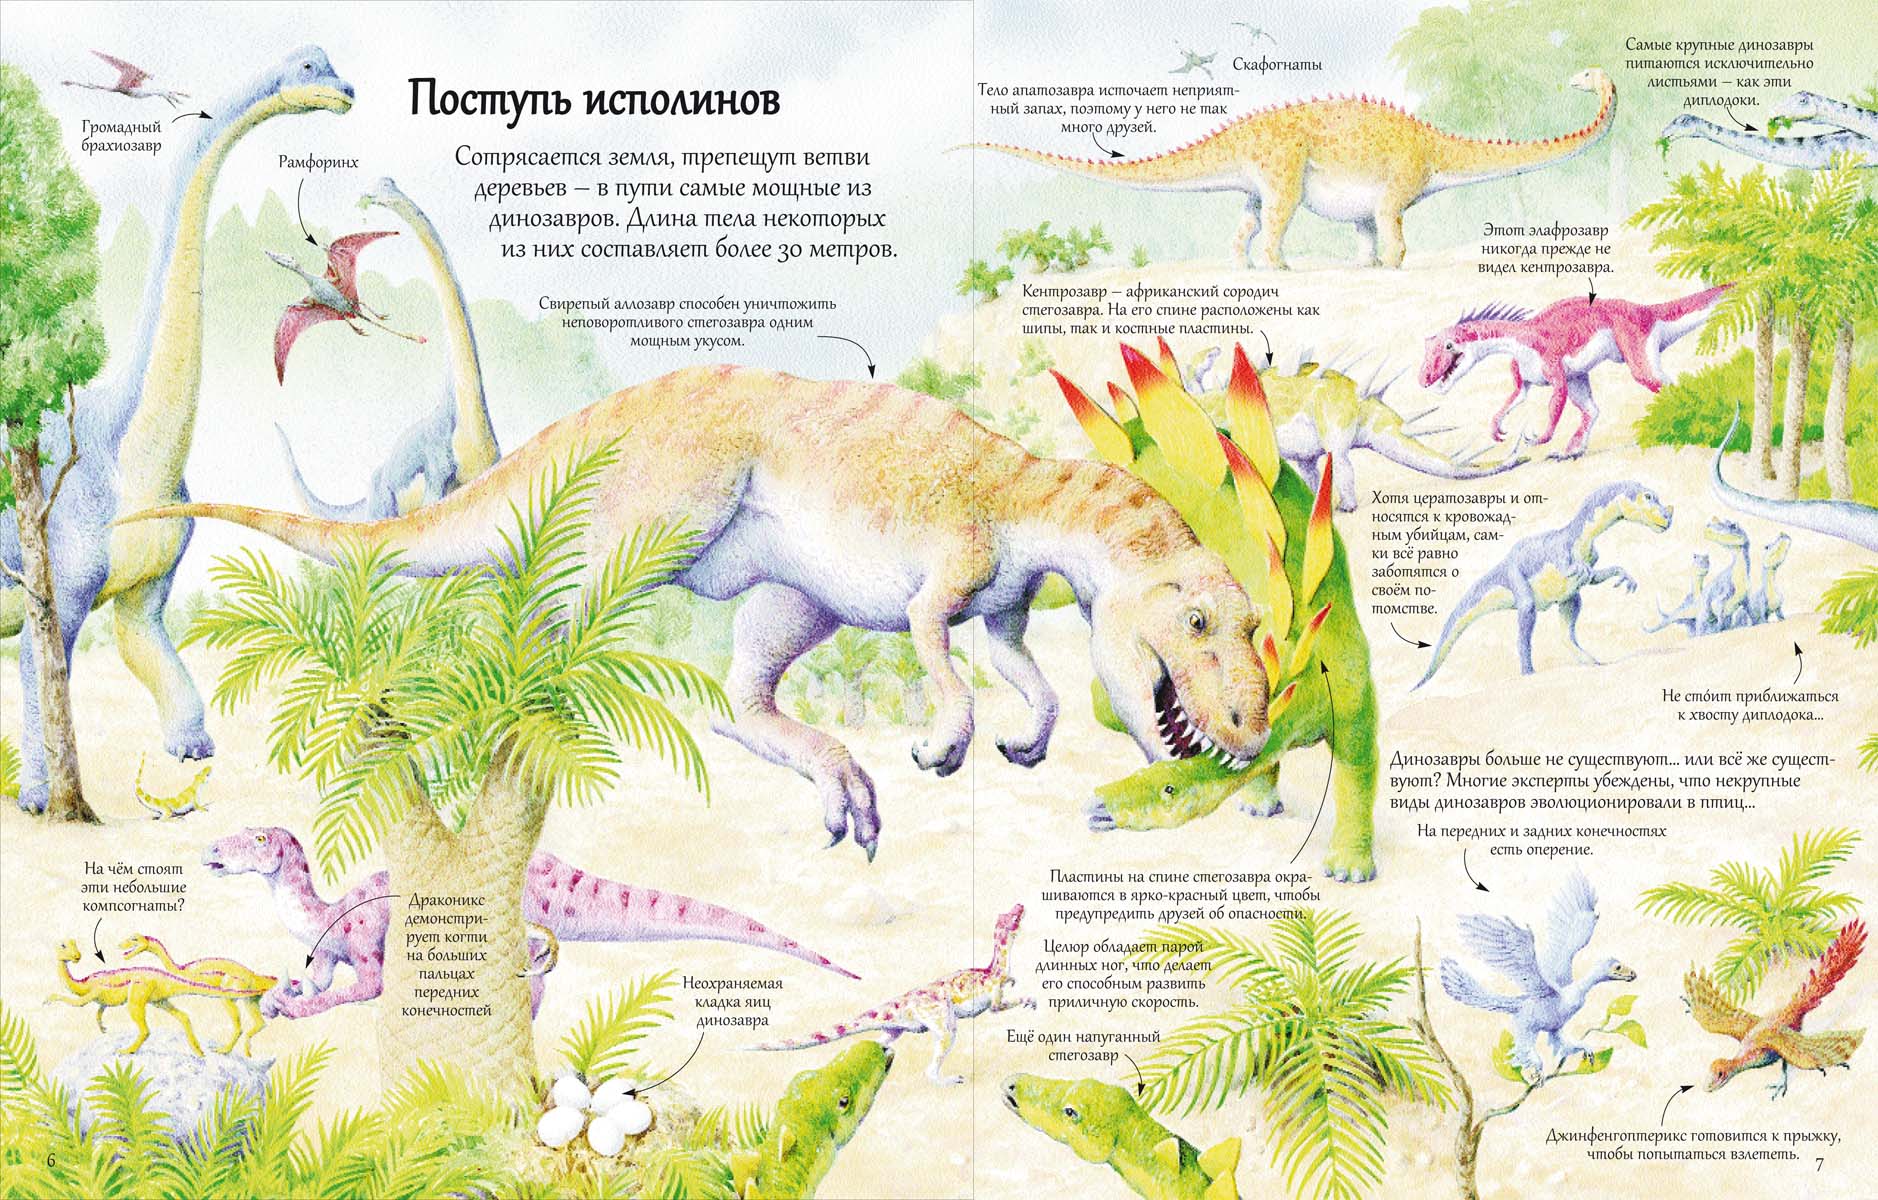 Книга с секретами Открой тайны динозавров